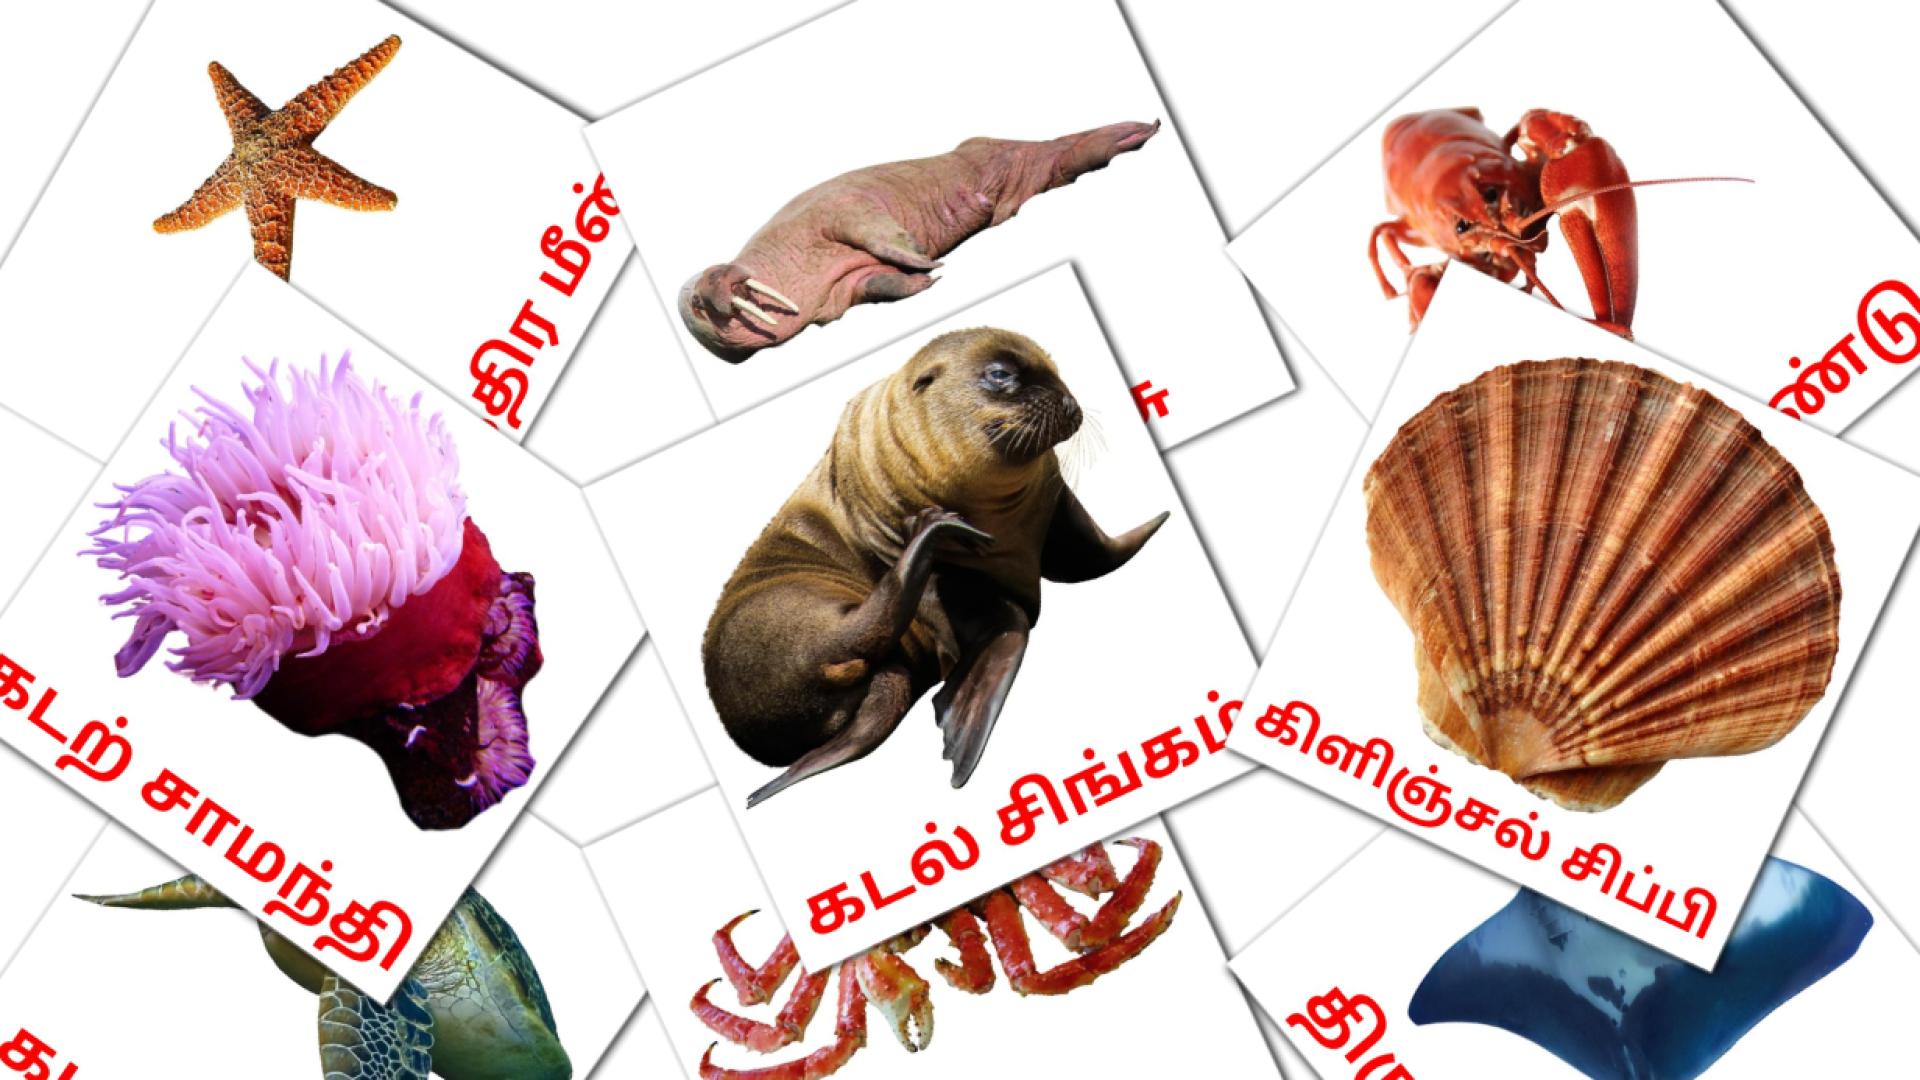 29 கடல் வாழ் விலங்குகள் flashcards